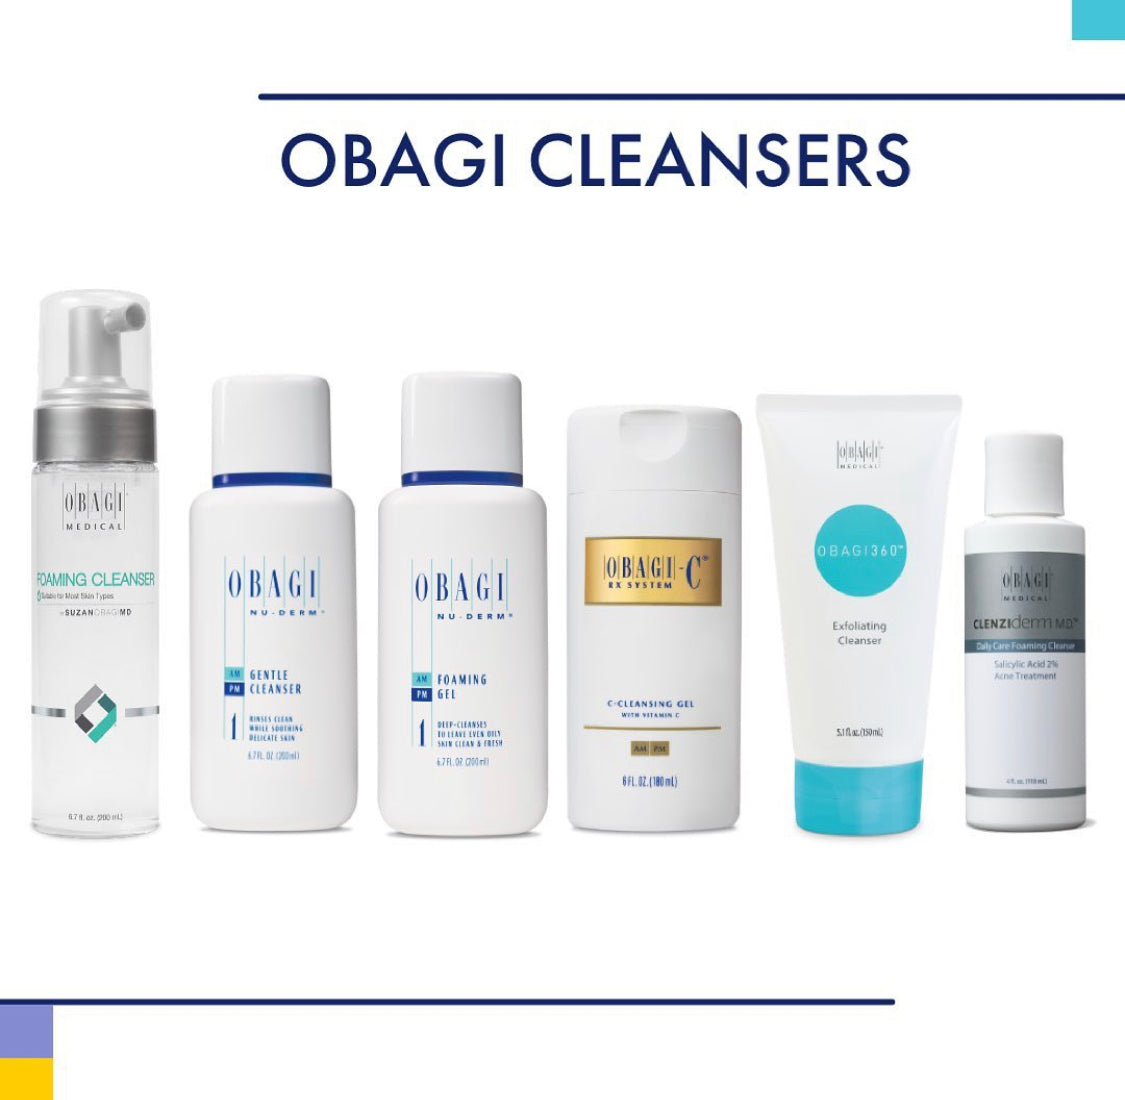 Obagi Cleanser Line Up